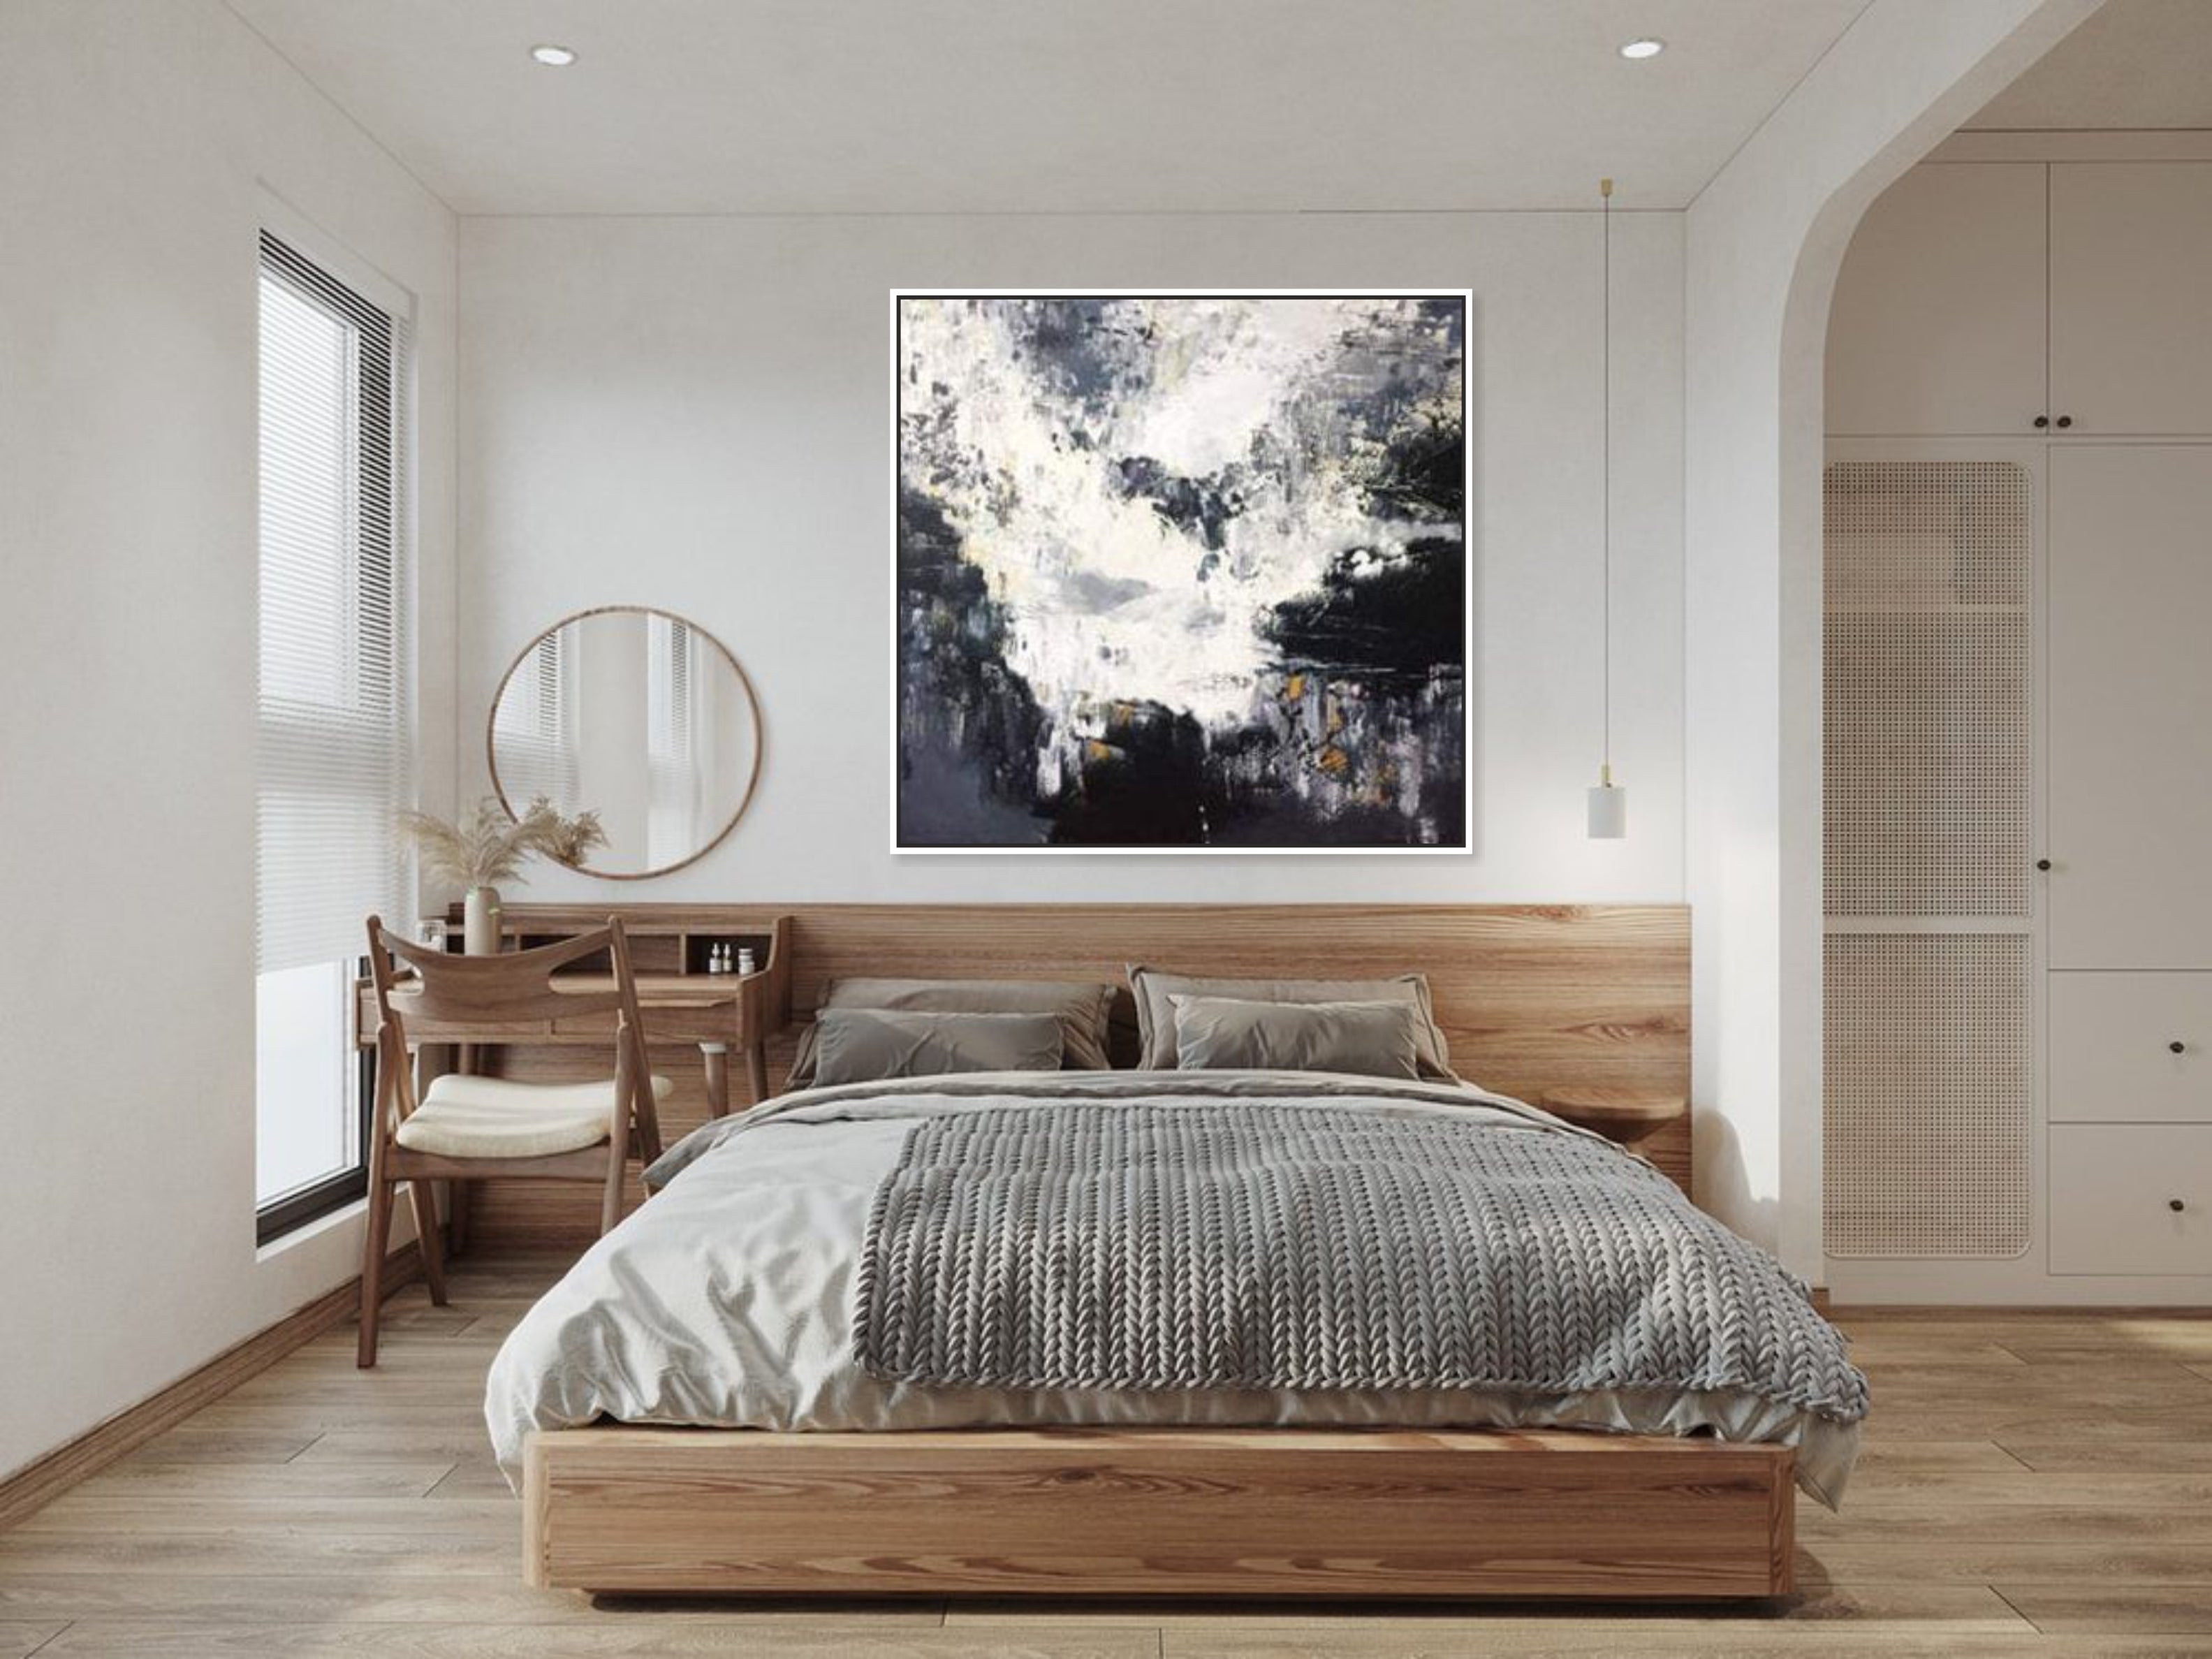 10 Bedroom Wall Paintings Ideas slider2-image-1